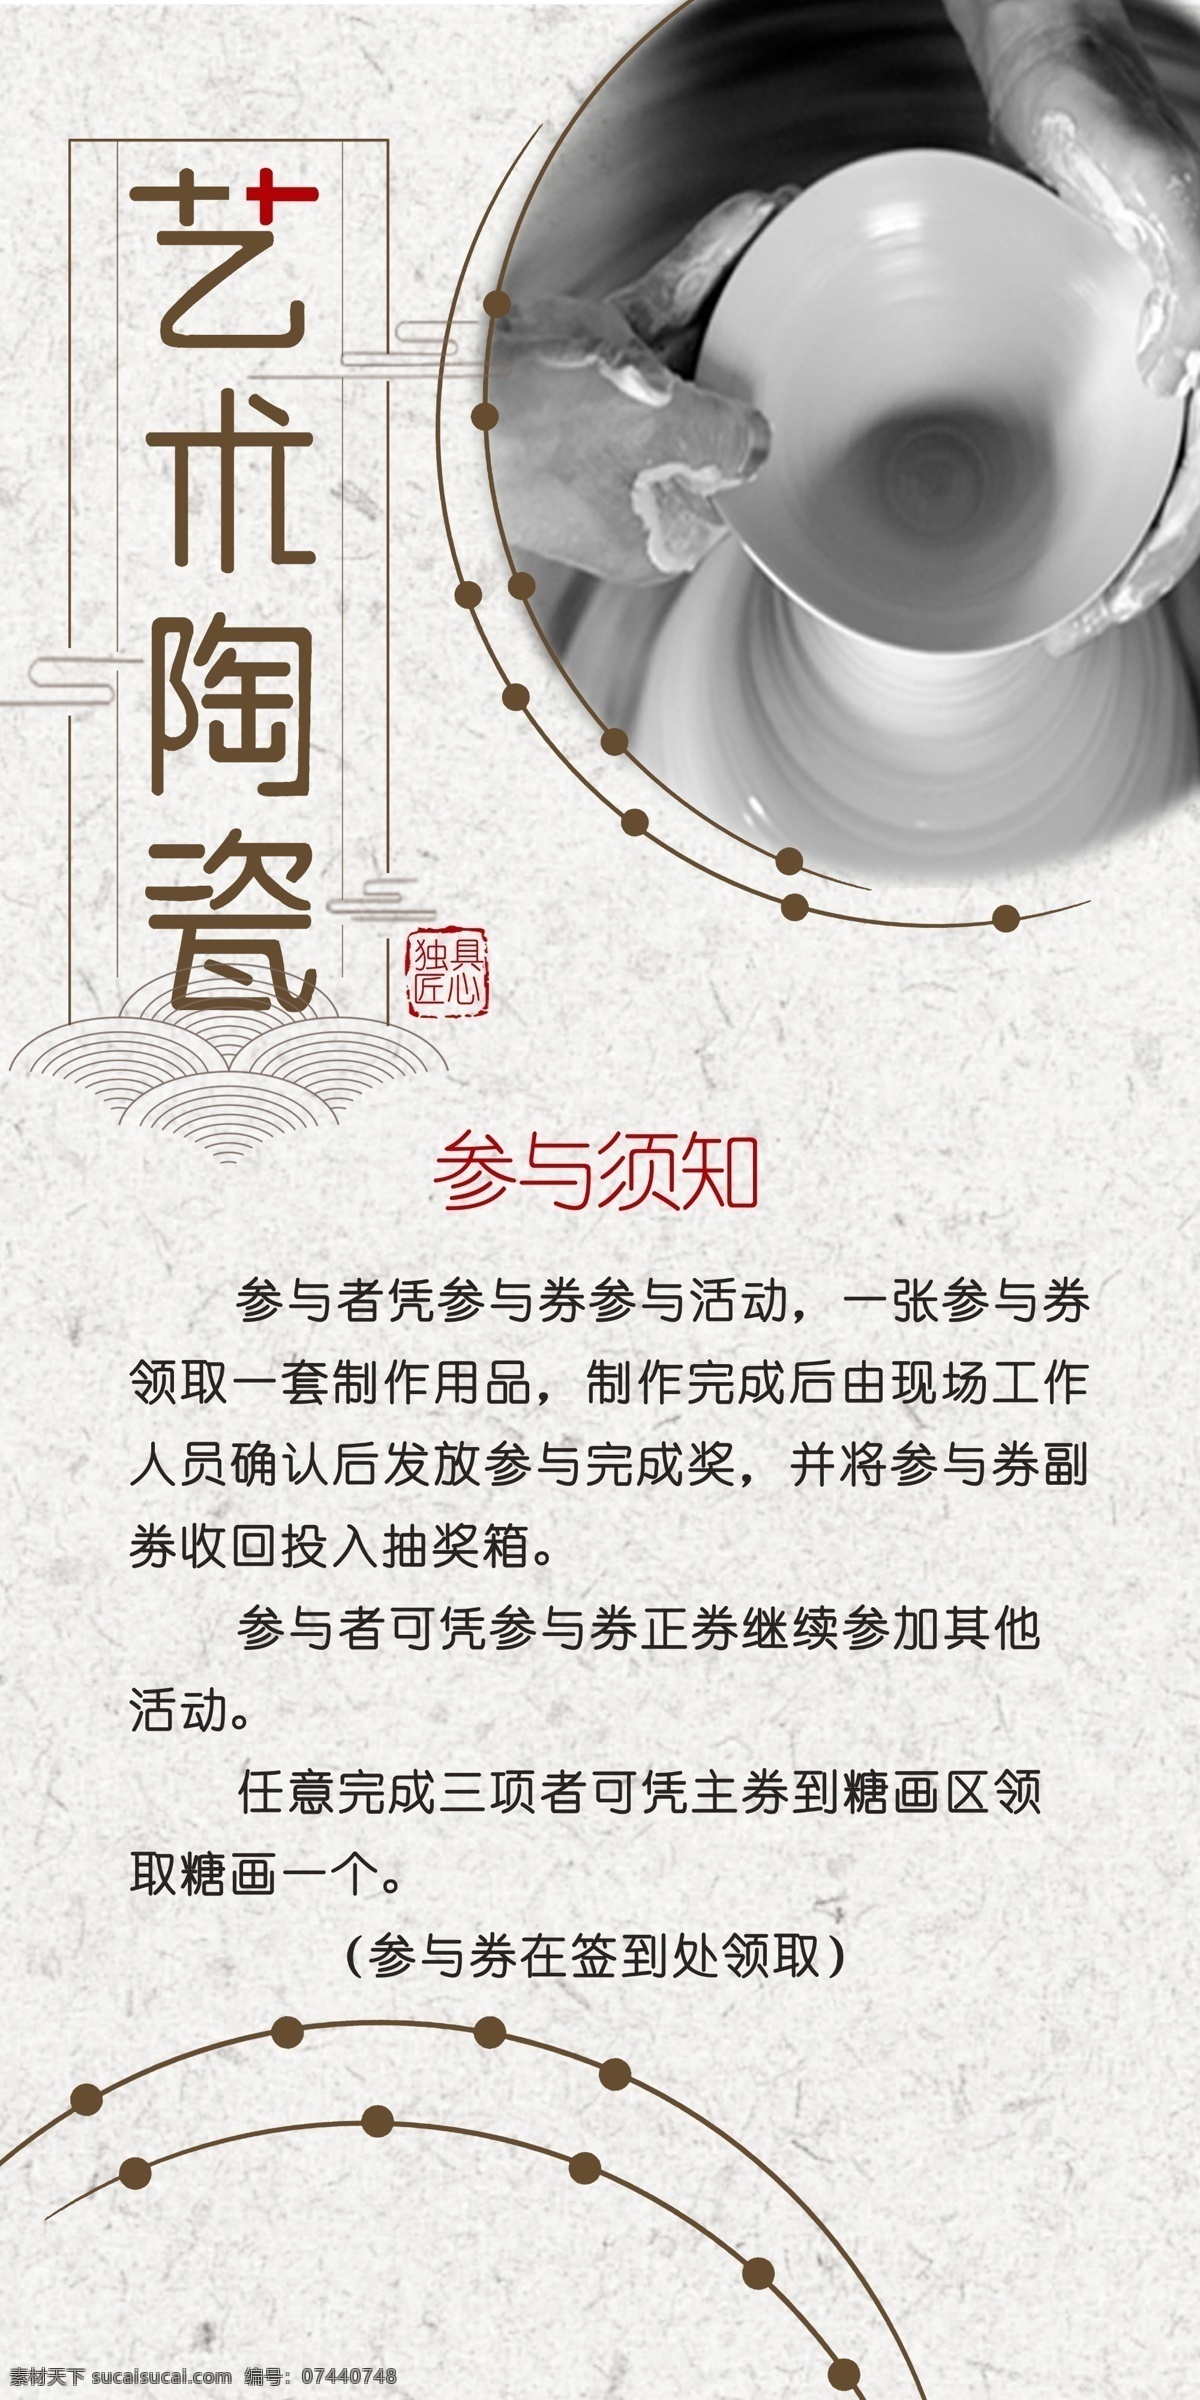 陶艺简介 展板 海报 易拉宝 手工陶艺 瓷器 展架 宣传画 传统文化